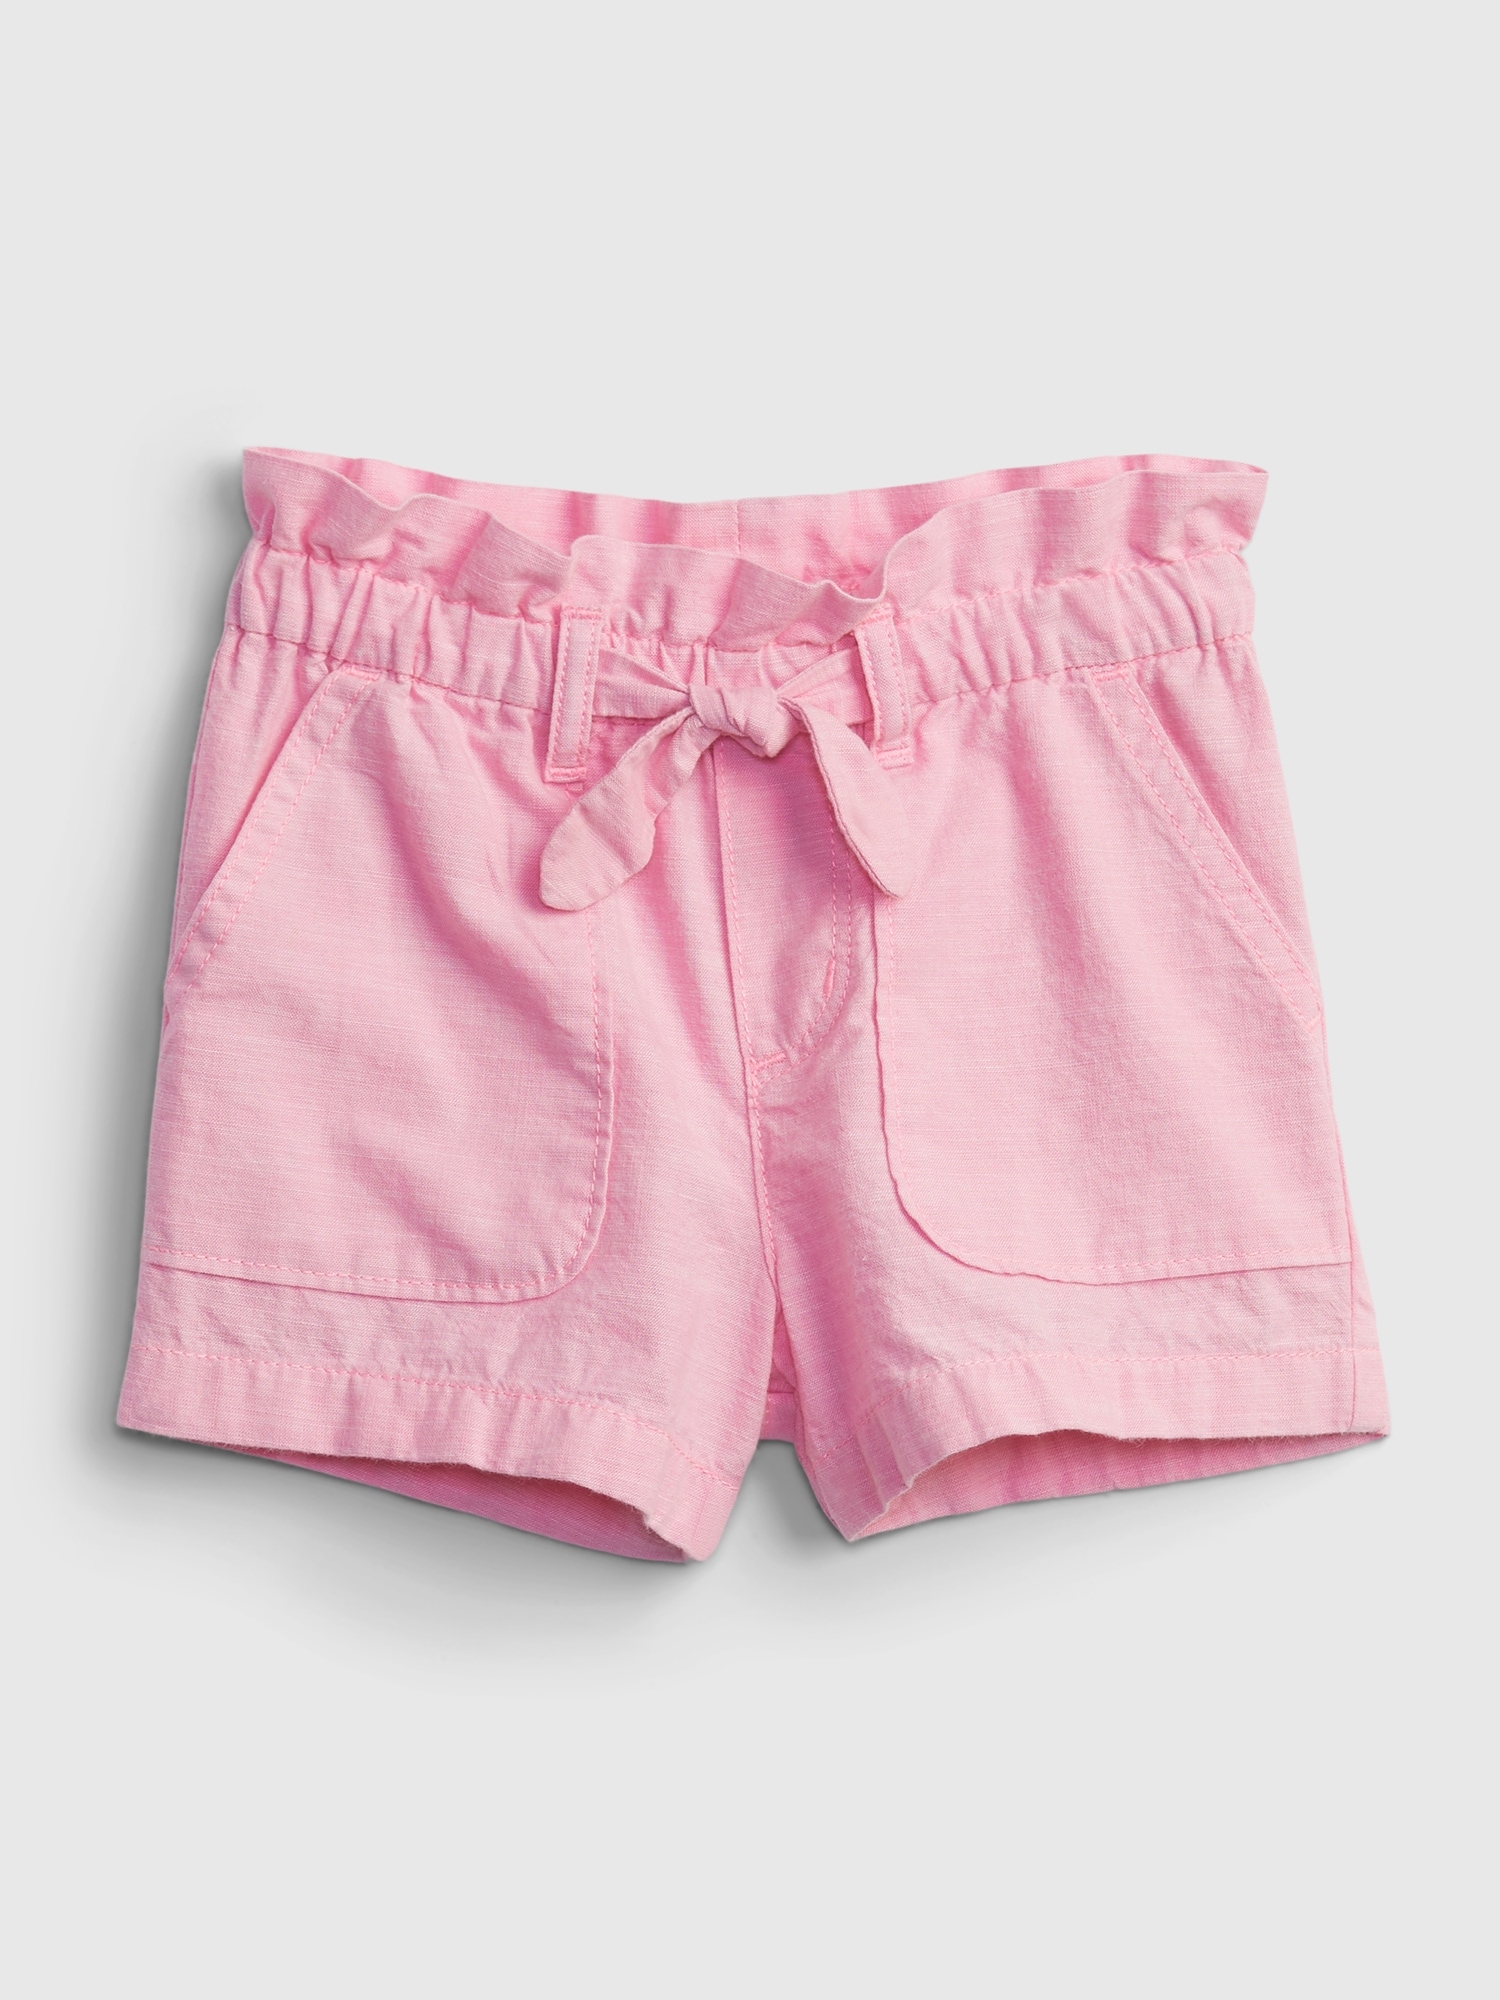 ショートパンツ・スカート (幼児 80-110cm) | Gap公式オンラインストア